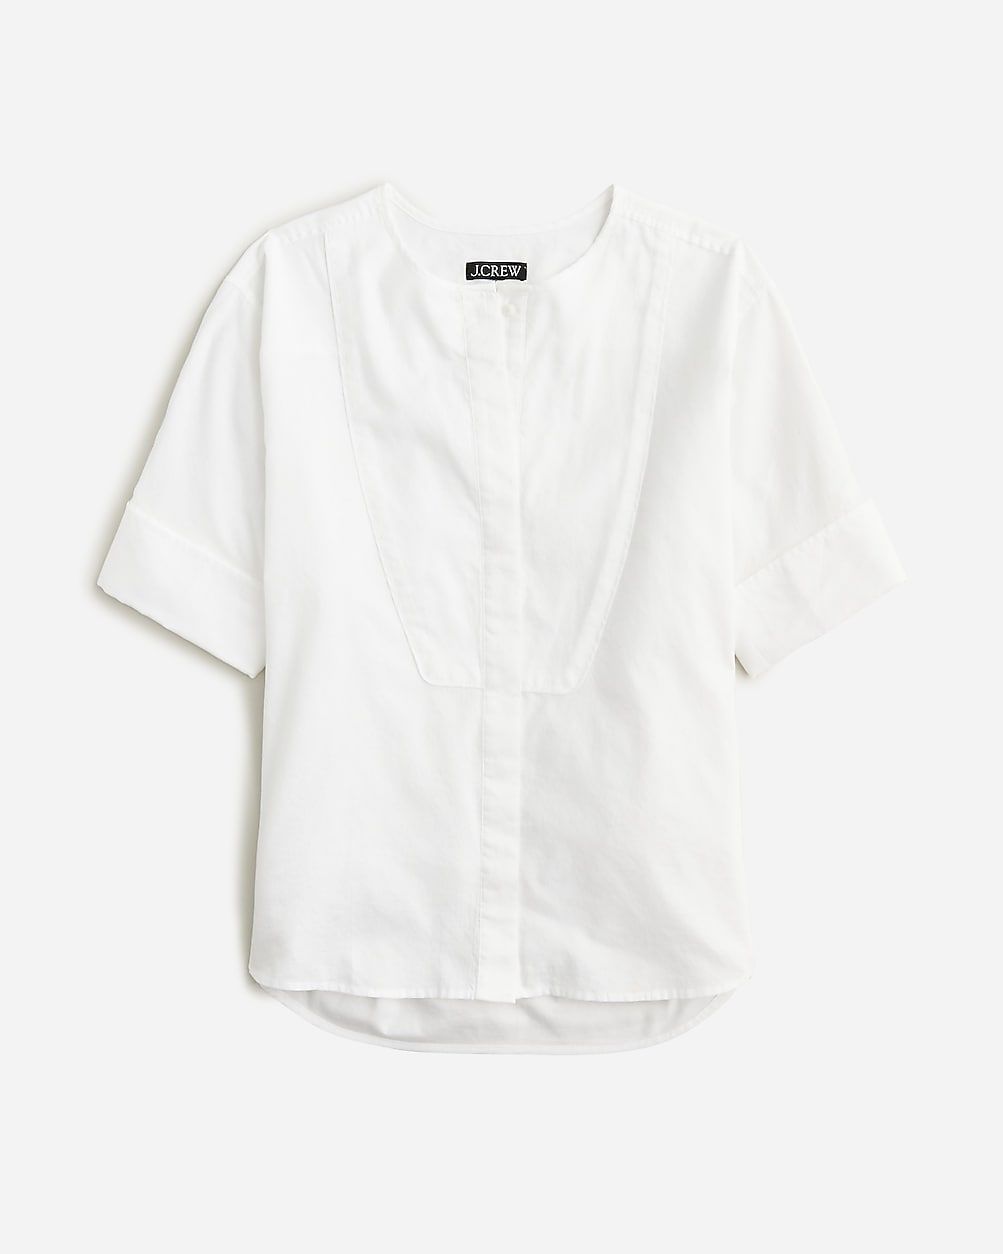 Bib button-up shirt in herringbone twill | J.Crew US